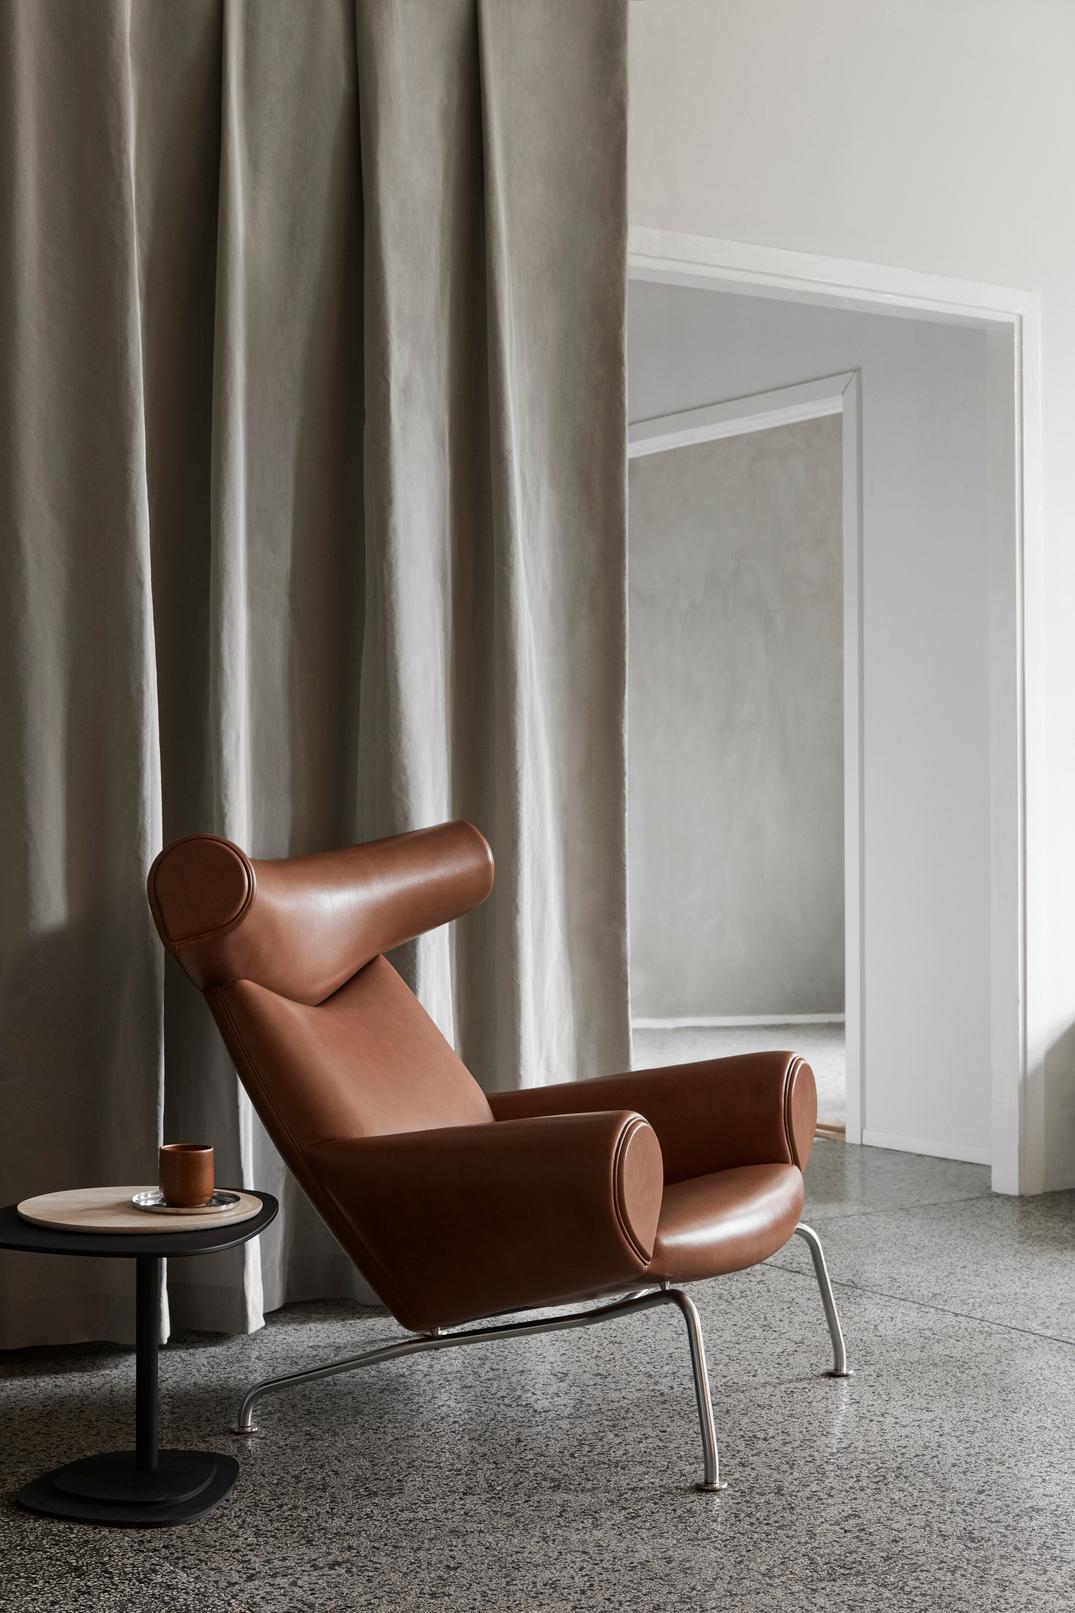 Conçue par Hans J. Wegner, la chaise Icone est une pièce emblématique à la présence indiscutable. Une chaise audacieuse et sculpturale qui remet en question l'esthétique understated design danois de l'époque, avec son appui-tête distinctif faisant